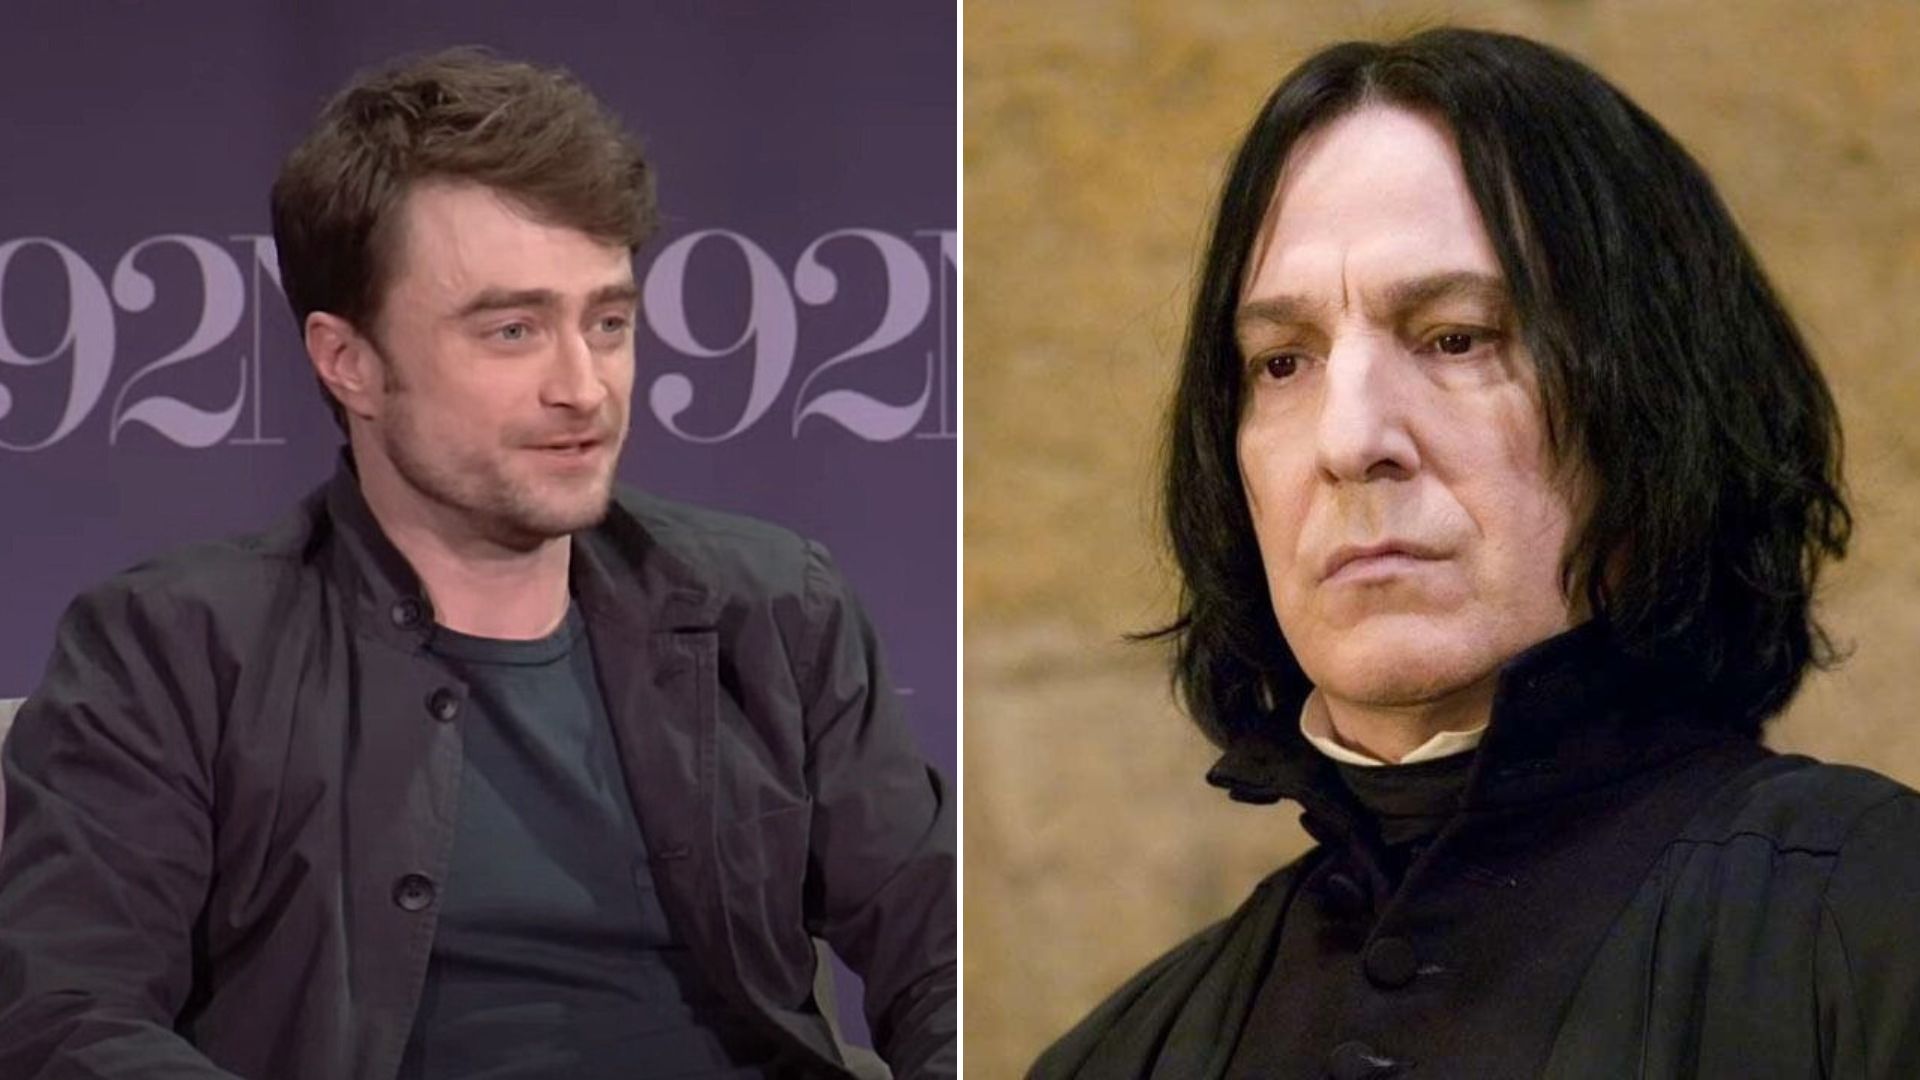 "Merci de m'avoir montré ça" : Daniel Radcliffe découvre un témoignage poignant d'Alan Rickman sur la saga Harry Potter